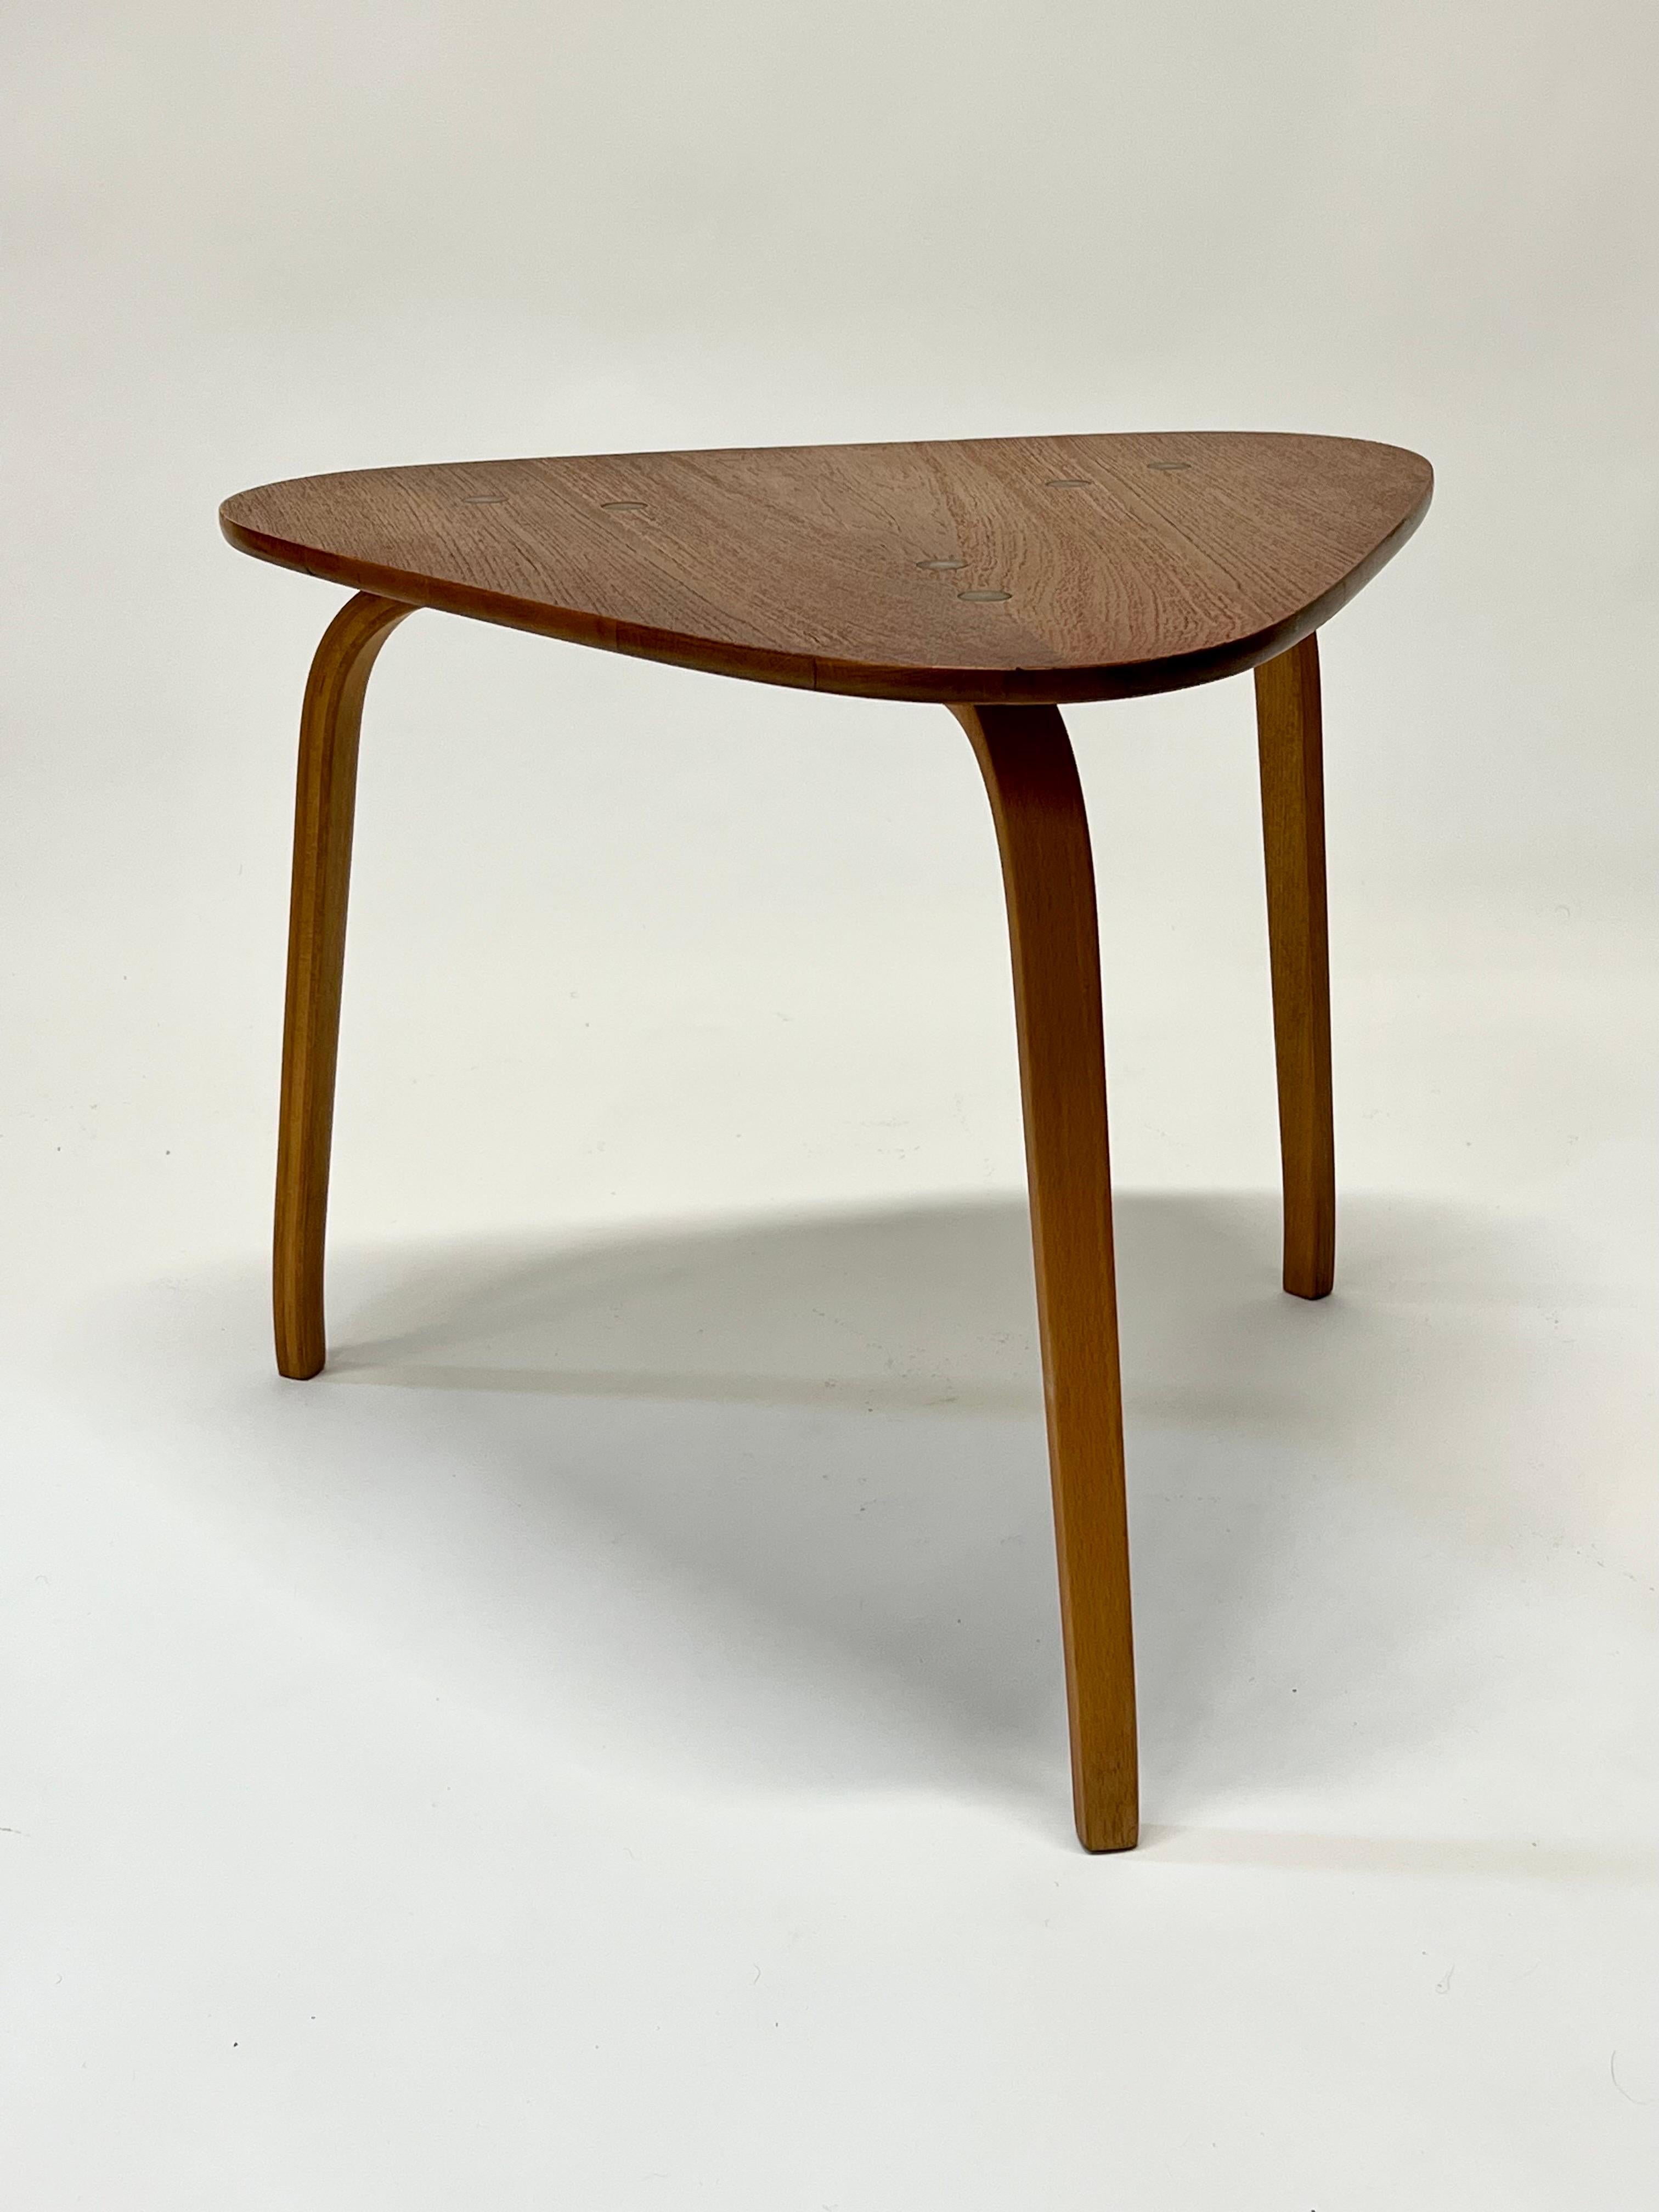 Magnifique table à médiators pour guitare, modèle ancien, conçu par Yngve Ekström pour Dux vers les années 1950, Suède. De magnifiques détails en laiton et un plateau flottant ne sont que quelques détails de conception très soignés de cette table. 